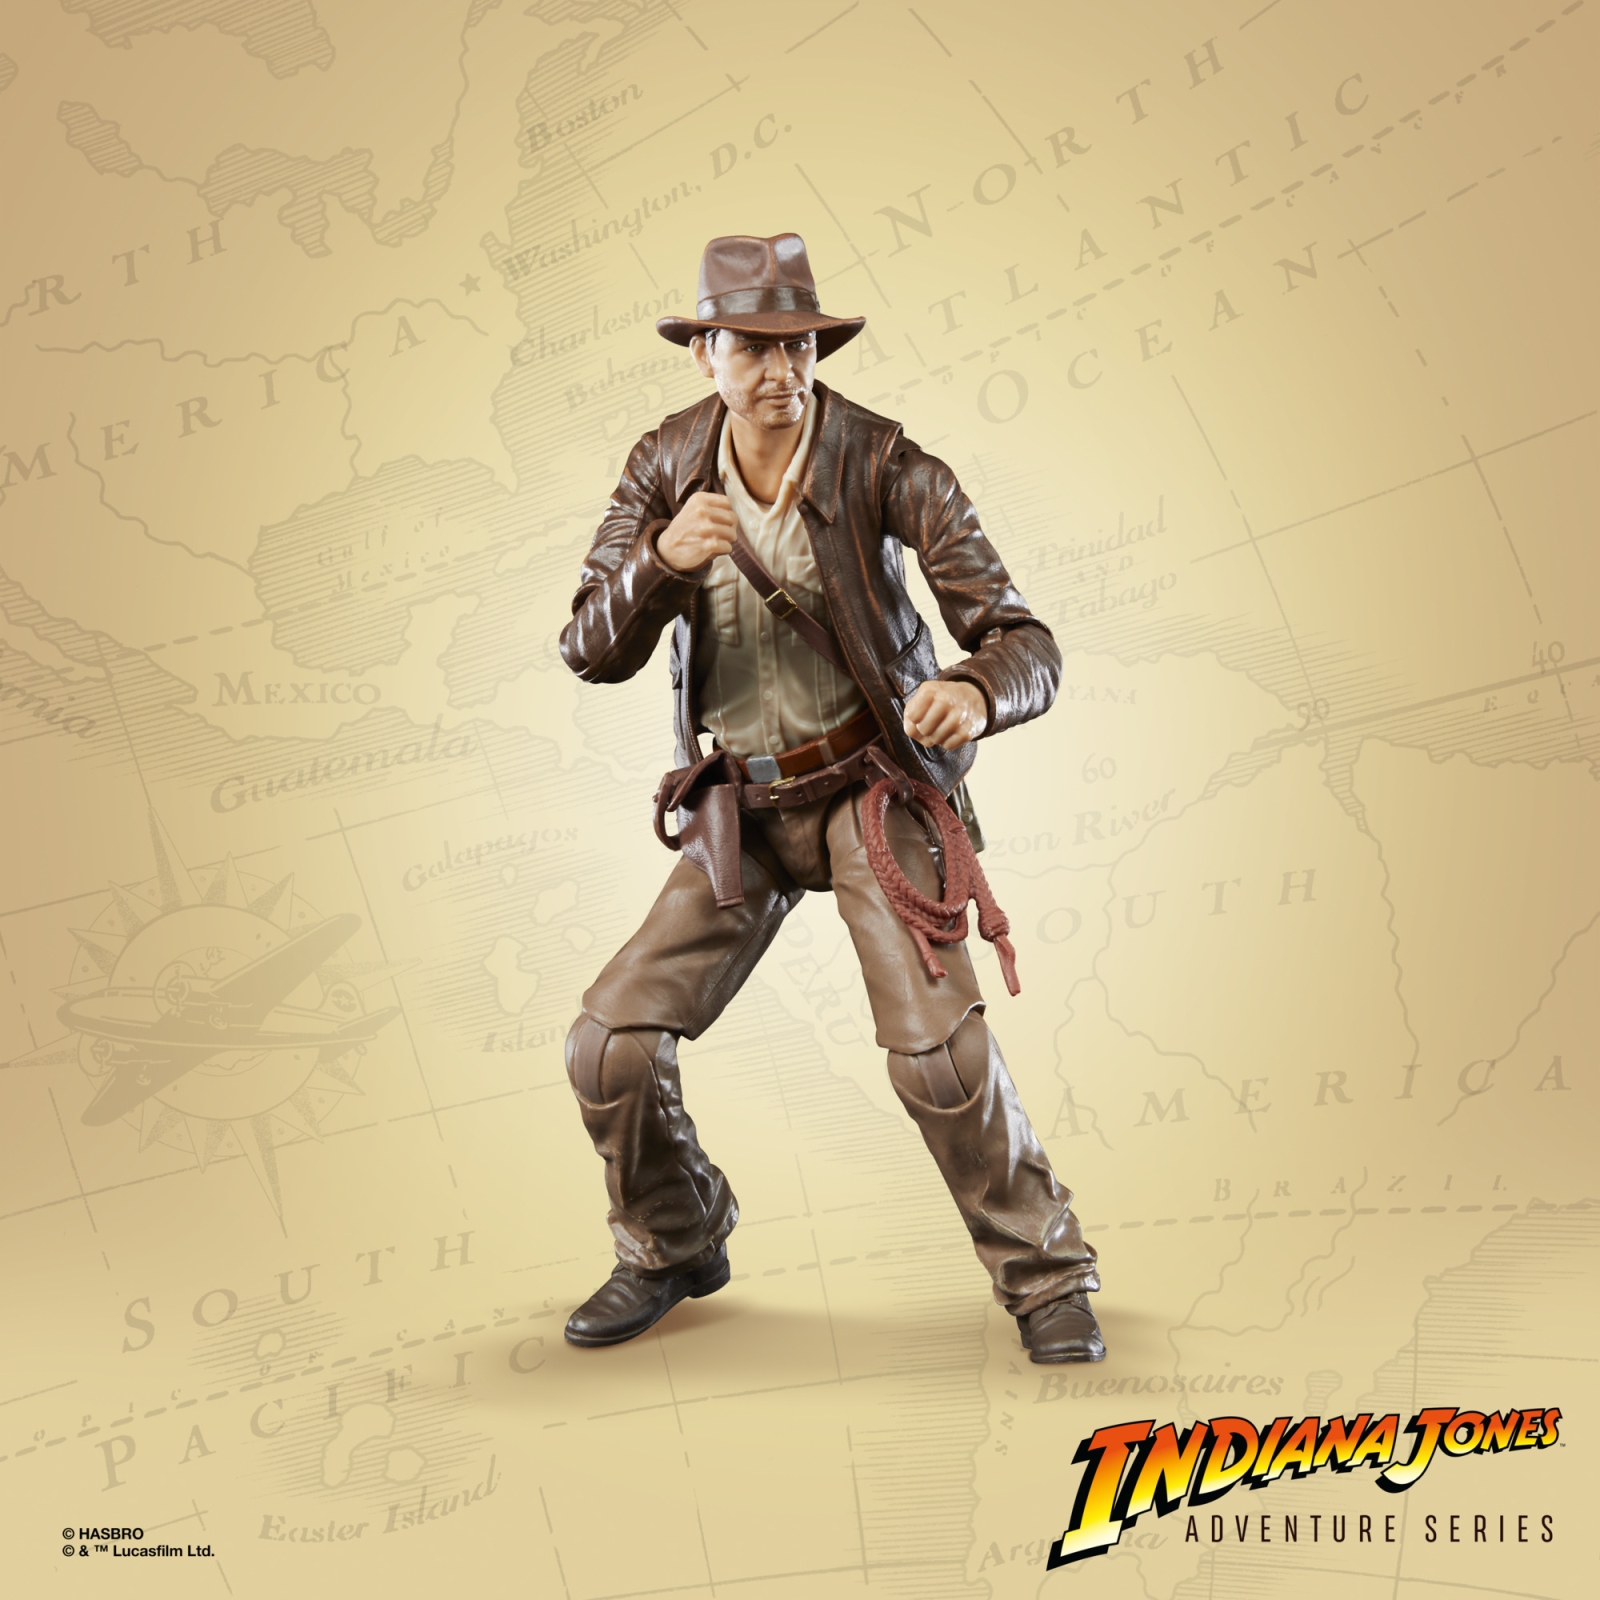 Vintage NEW Viewmaster Reels lot Indiana Jones HeMan Super Heroes